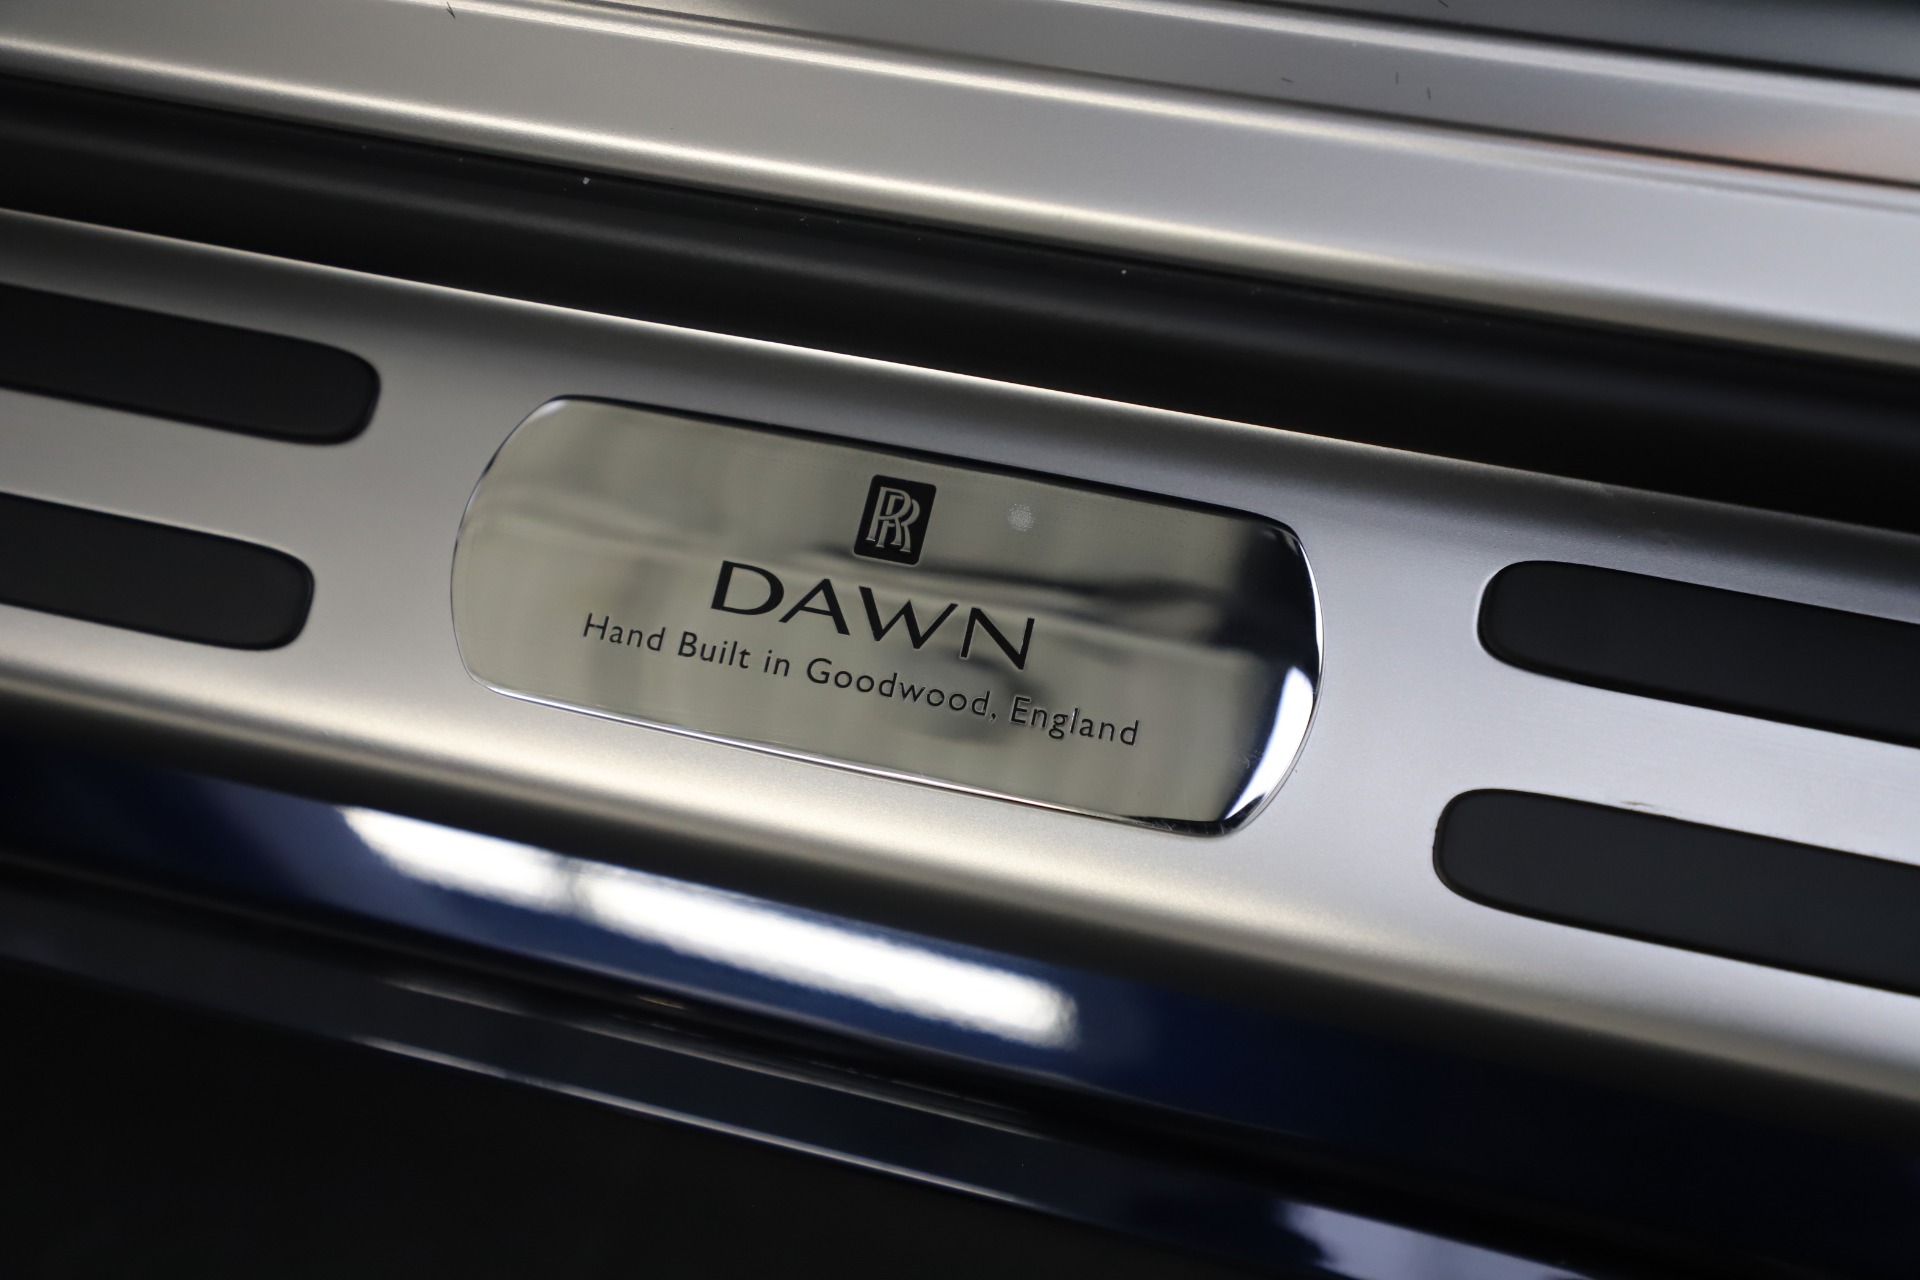 Used 2017 Rolls Royce Dawn